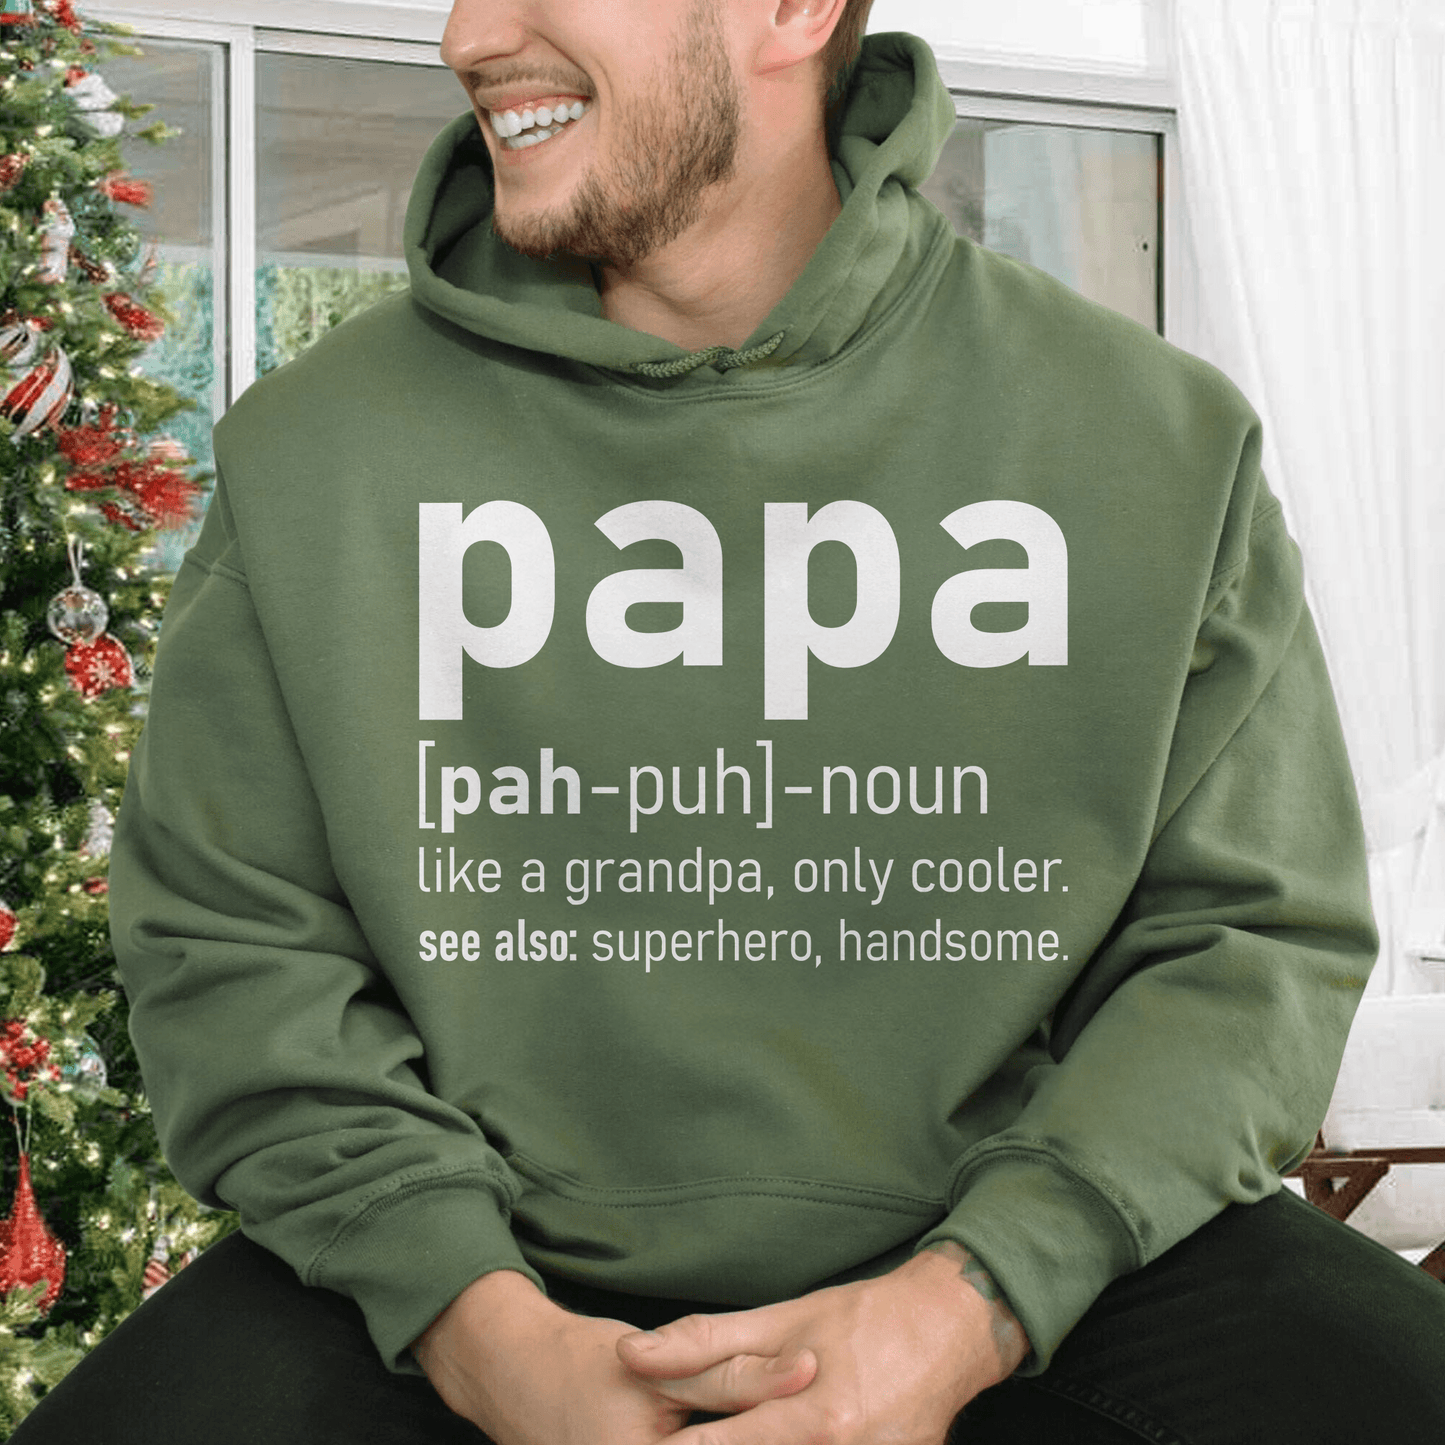 Papa Definition Hoodie und Sweatshirt - Geschenk für Papa - GiftHaus